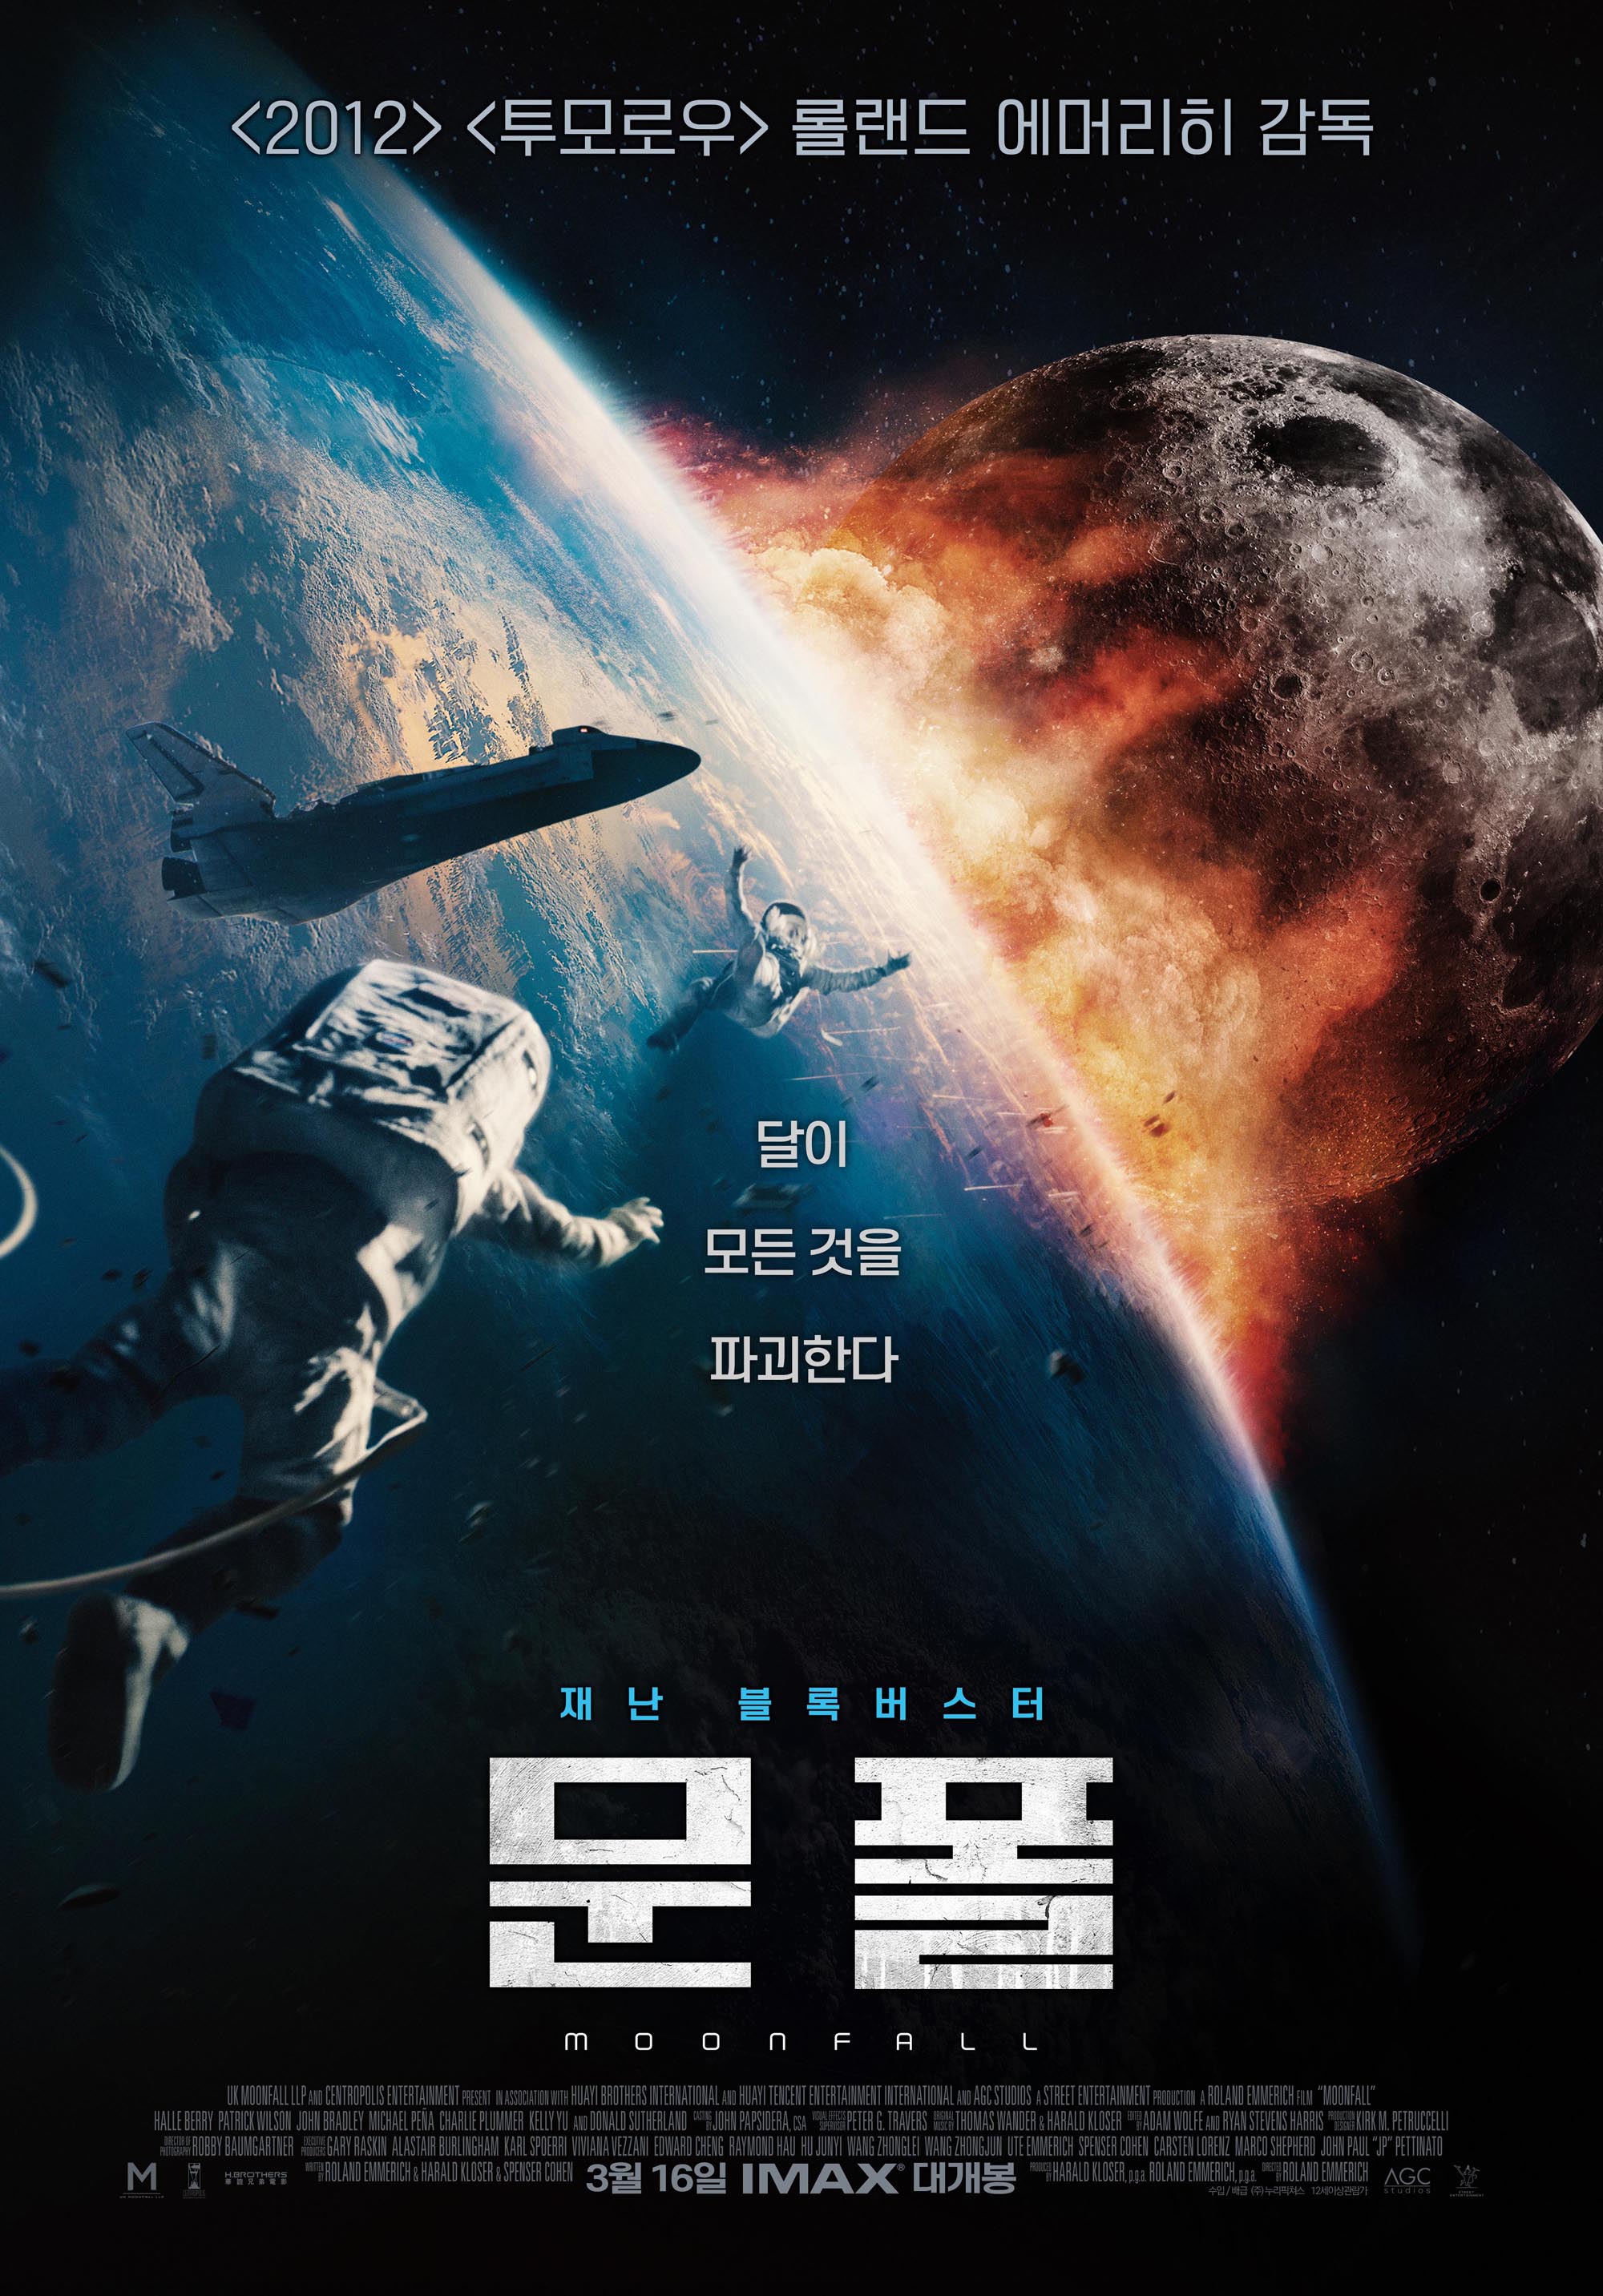 재난 블록버스터 영화 &#39;문폴&#39;의 포스터.
달이 지구와 충돌하는 모습이 담겨있다.